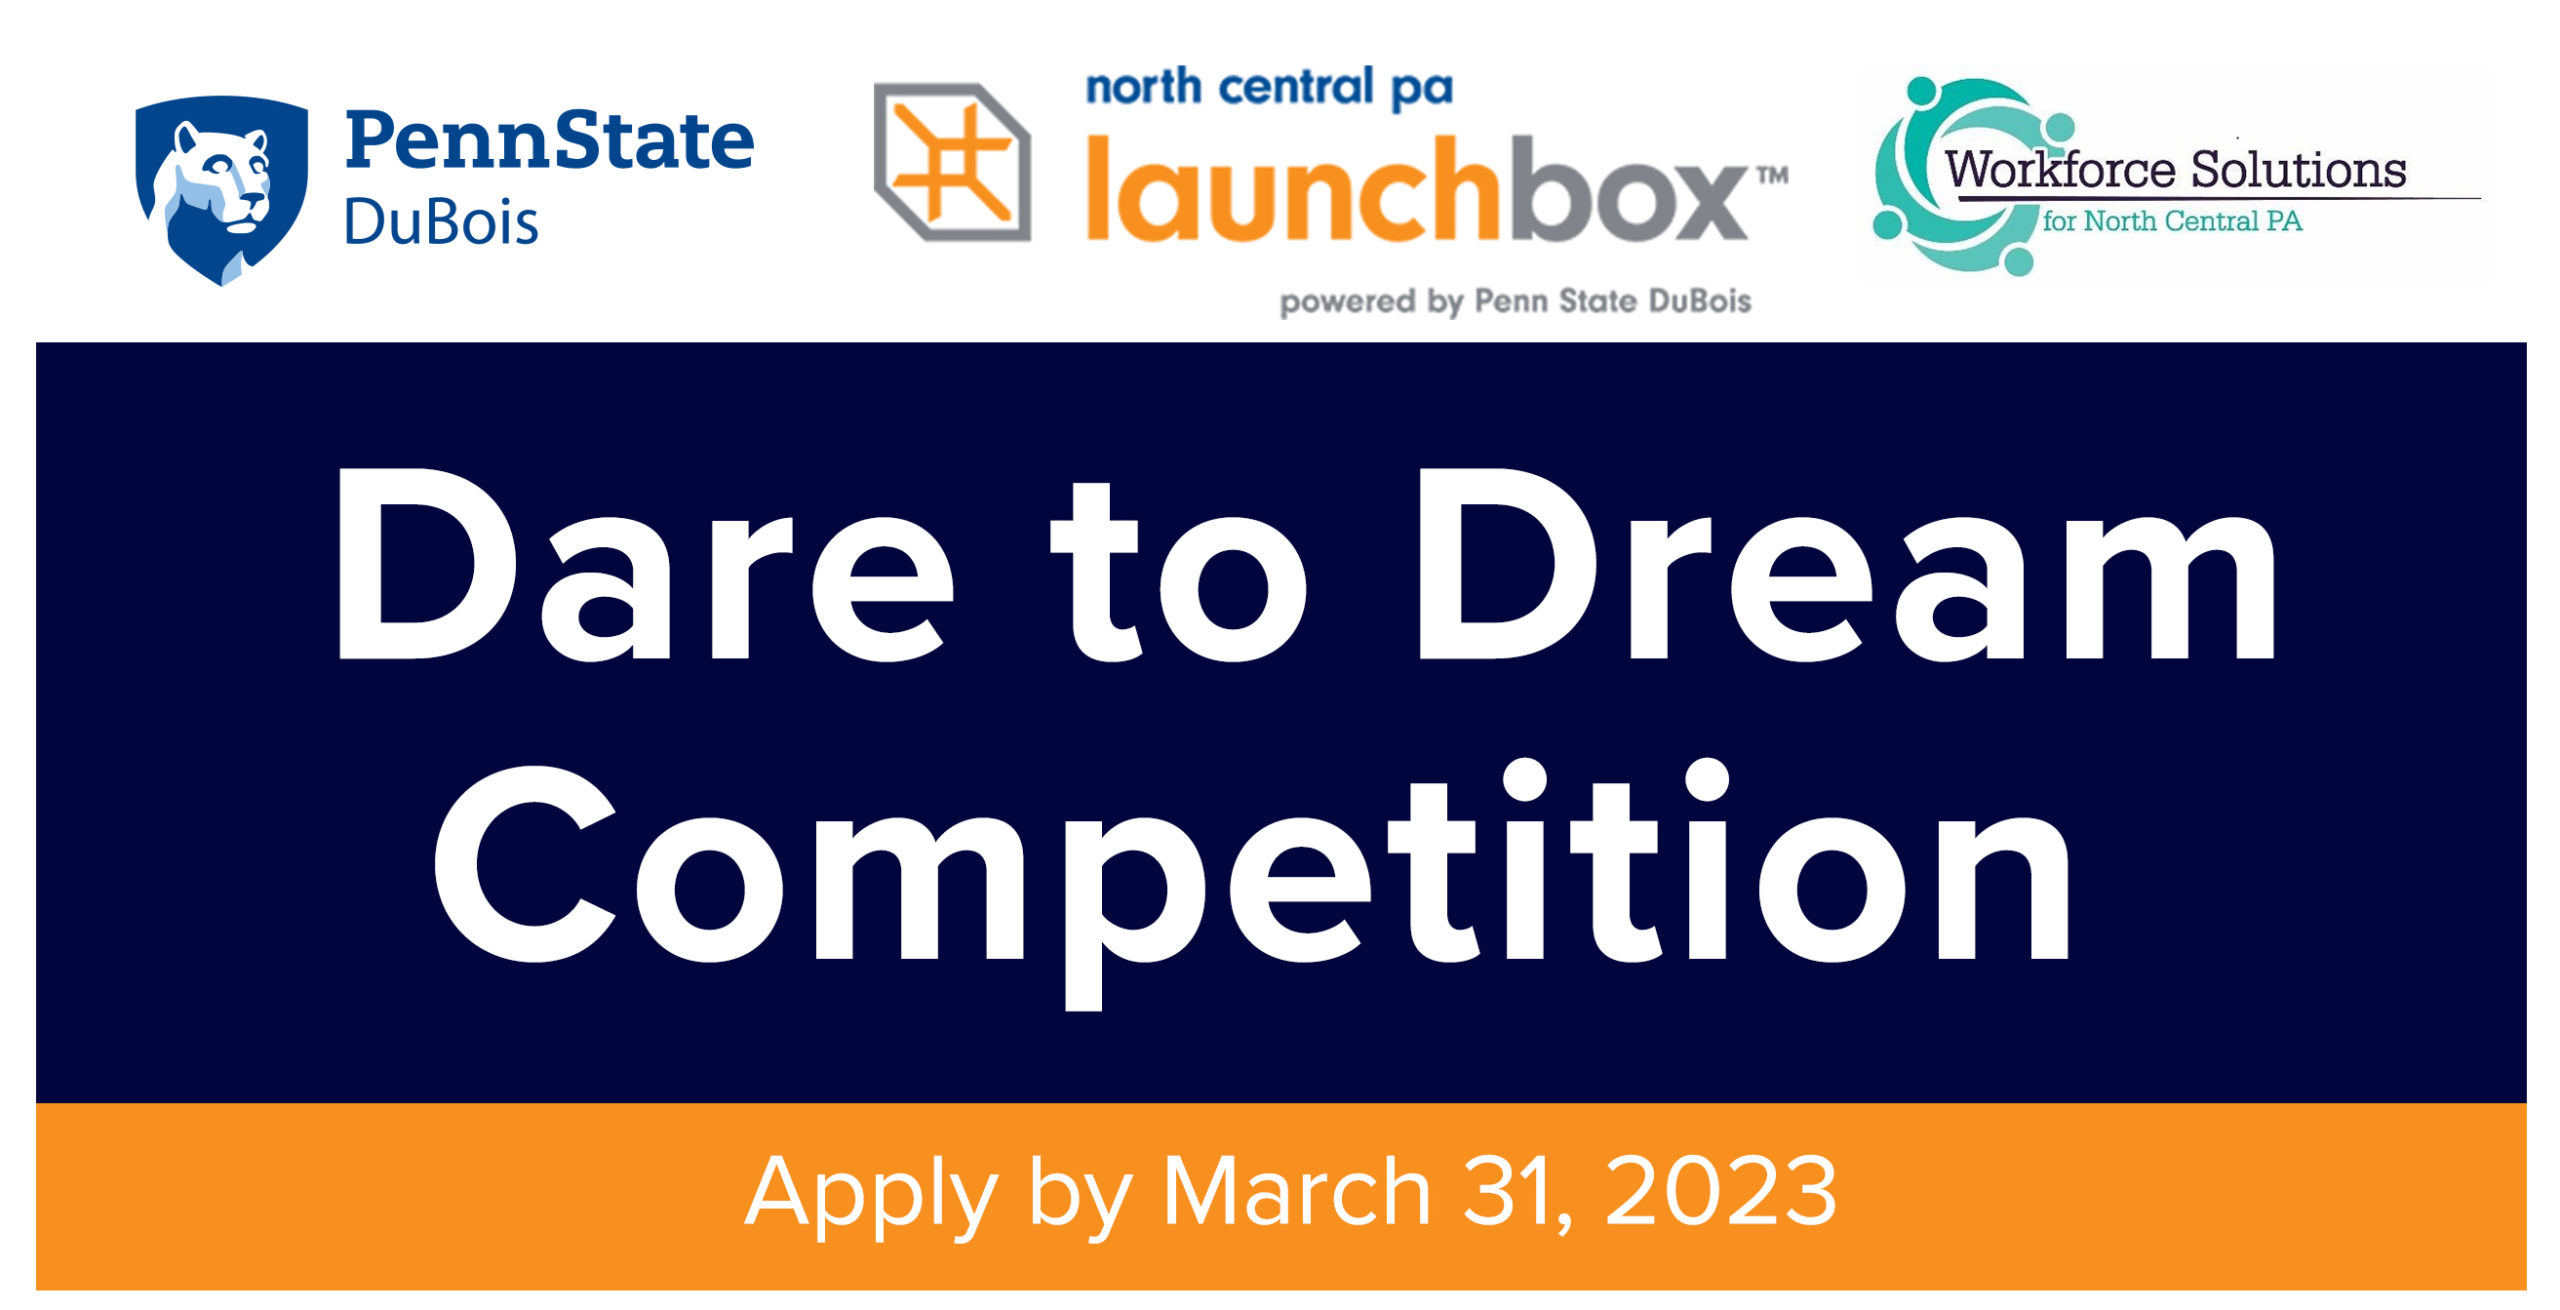 Dare to Dream Competition